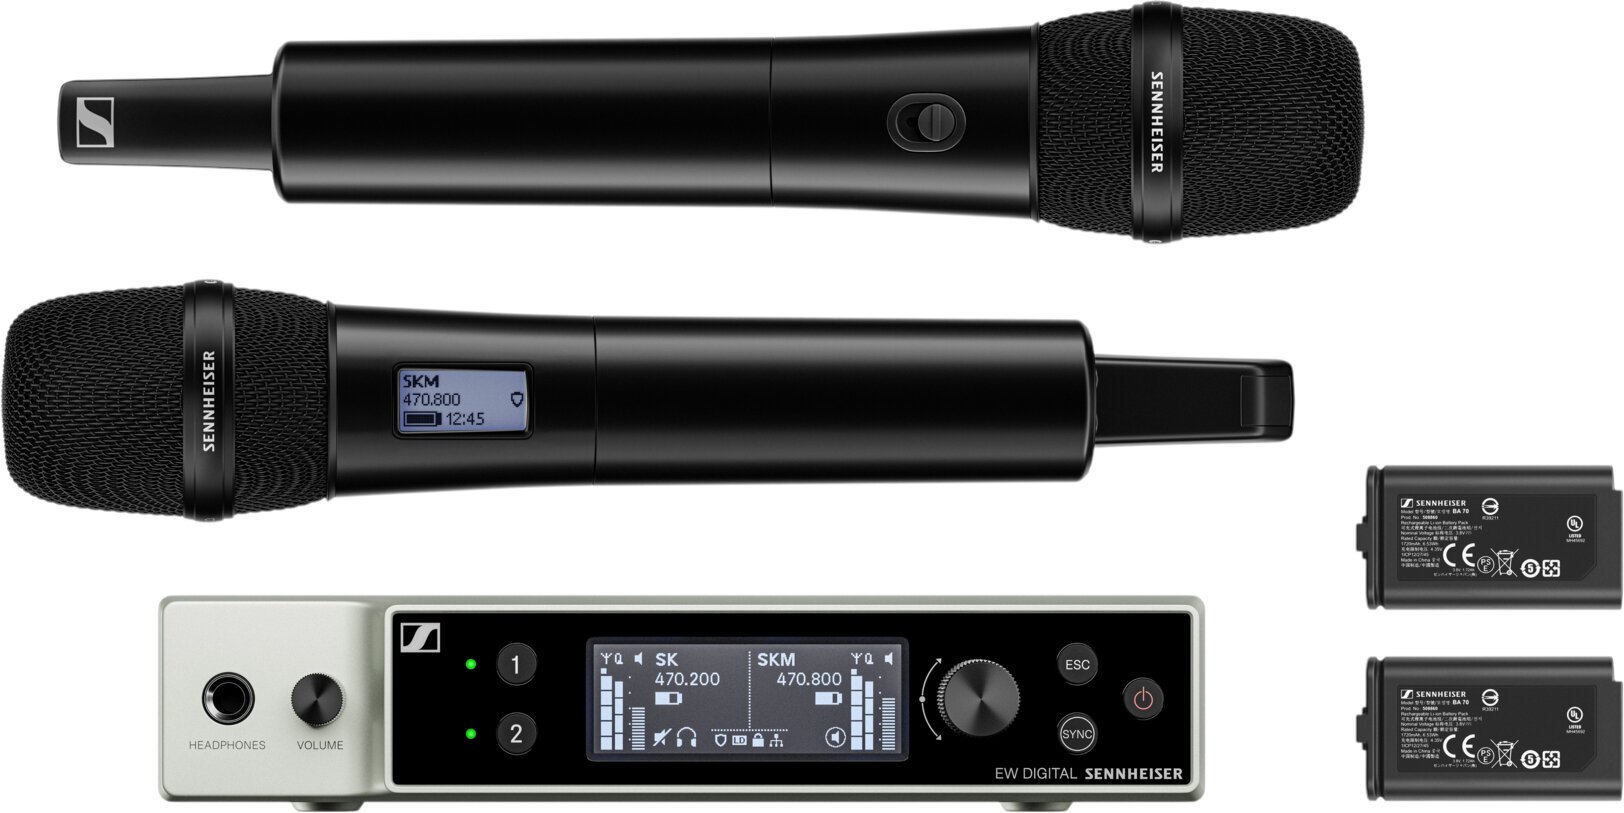 Trådlös handhållen mikrofonuppsättning Sennheiser EW-DX 835-S Set S2-10: 614.2-693.8 MHz